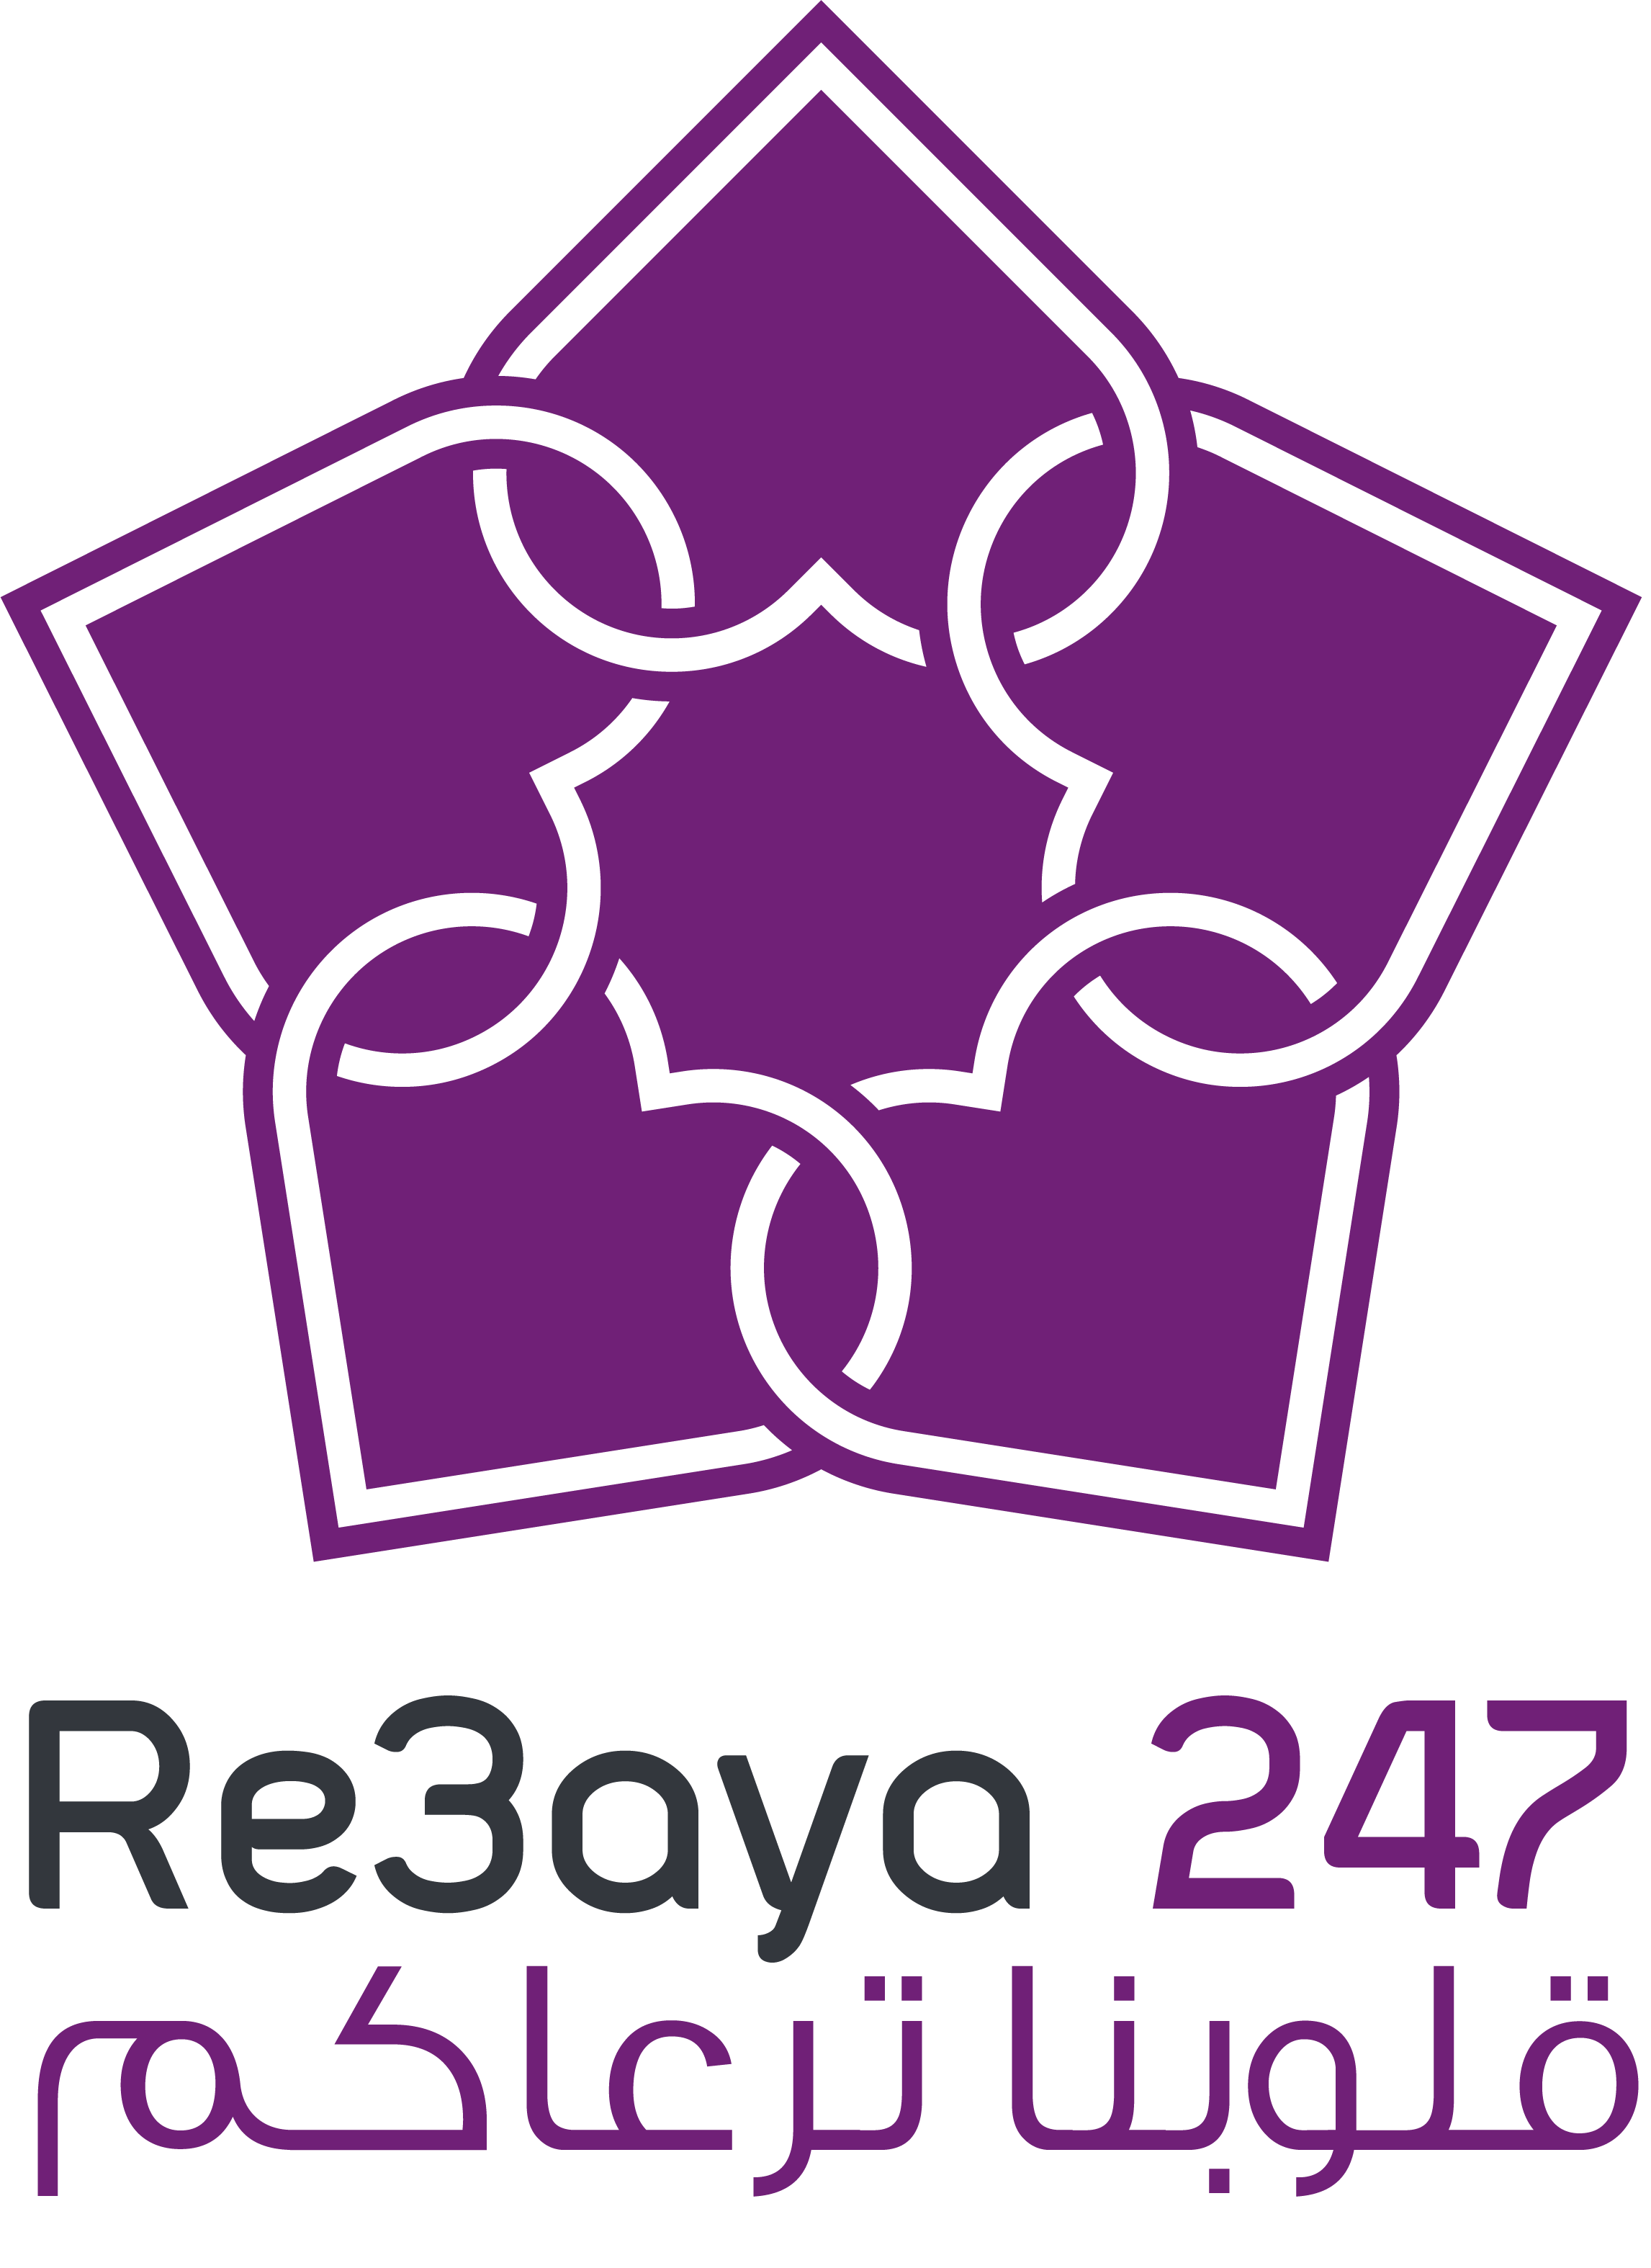 Re3aya24/7